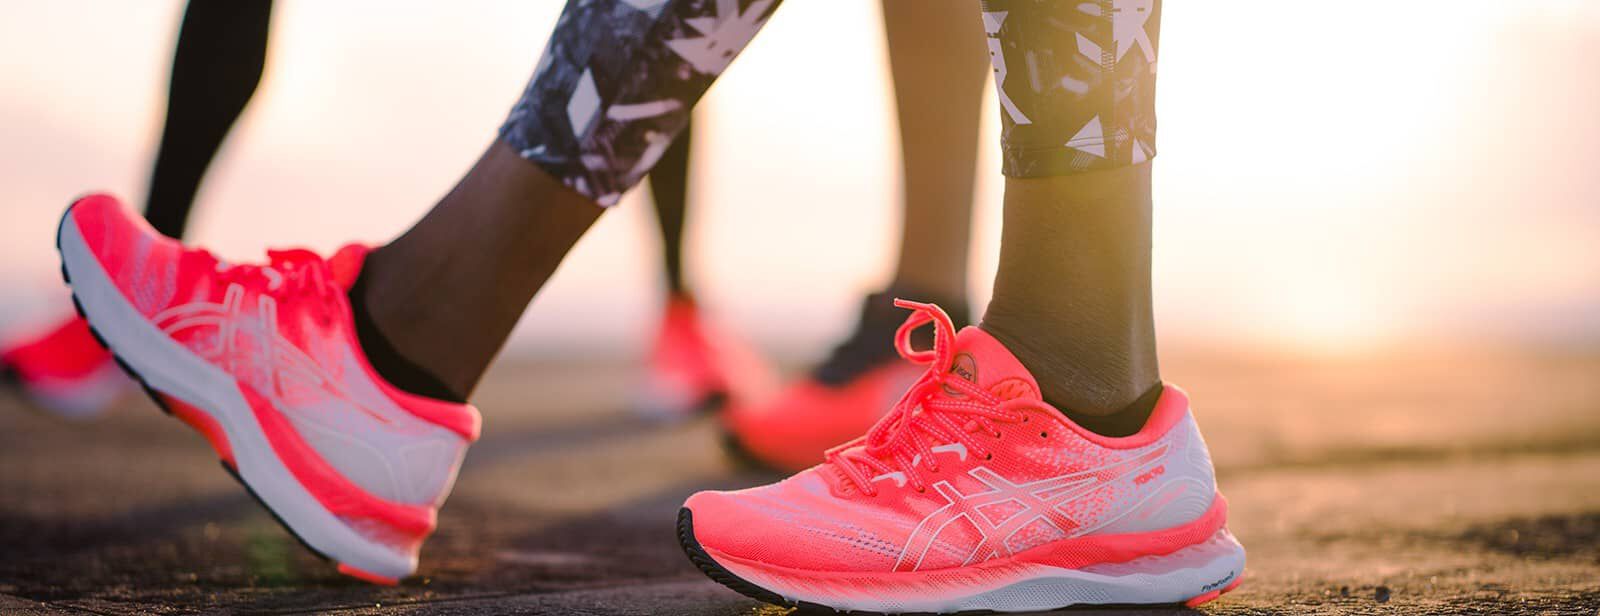 Come scegliere le tue prime scarpe da running | ASICS IT